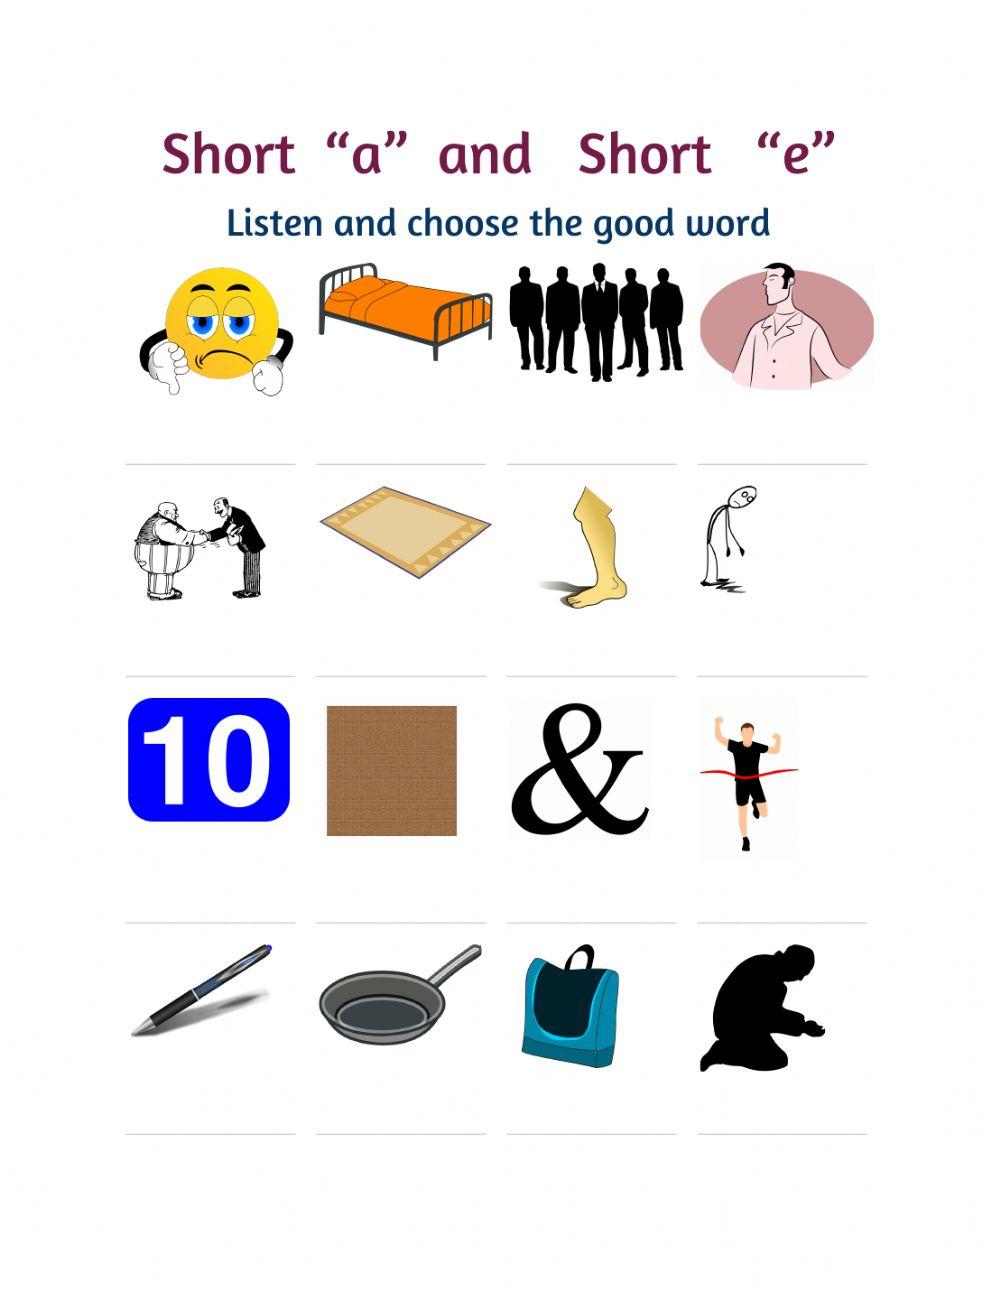 Short a and short o